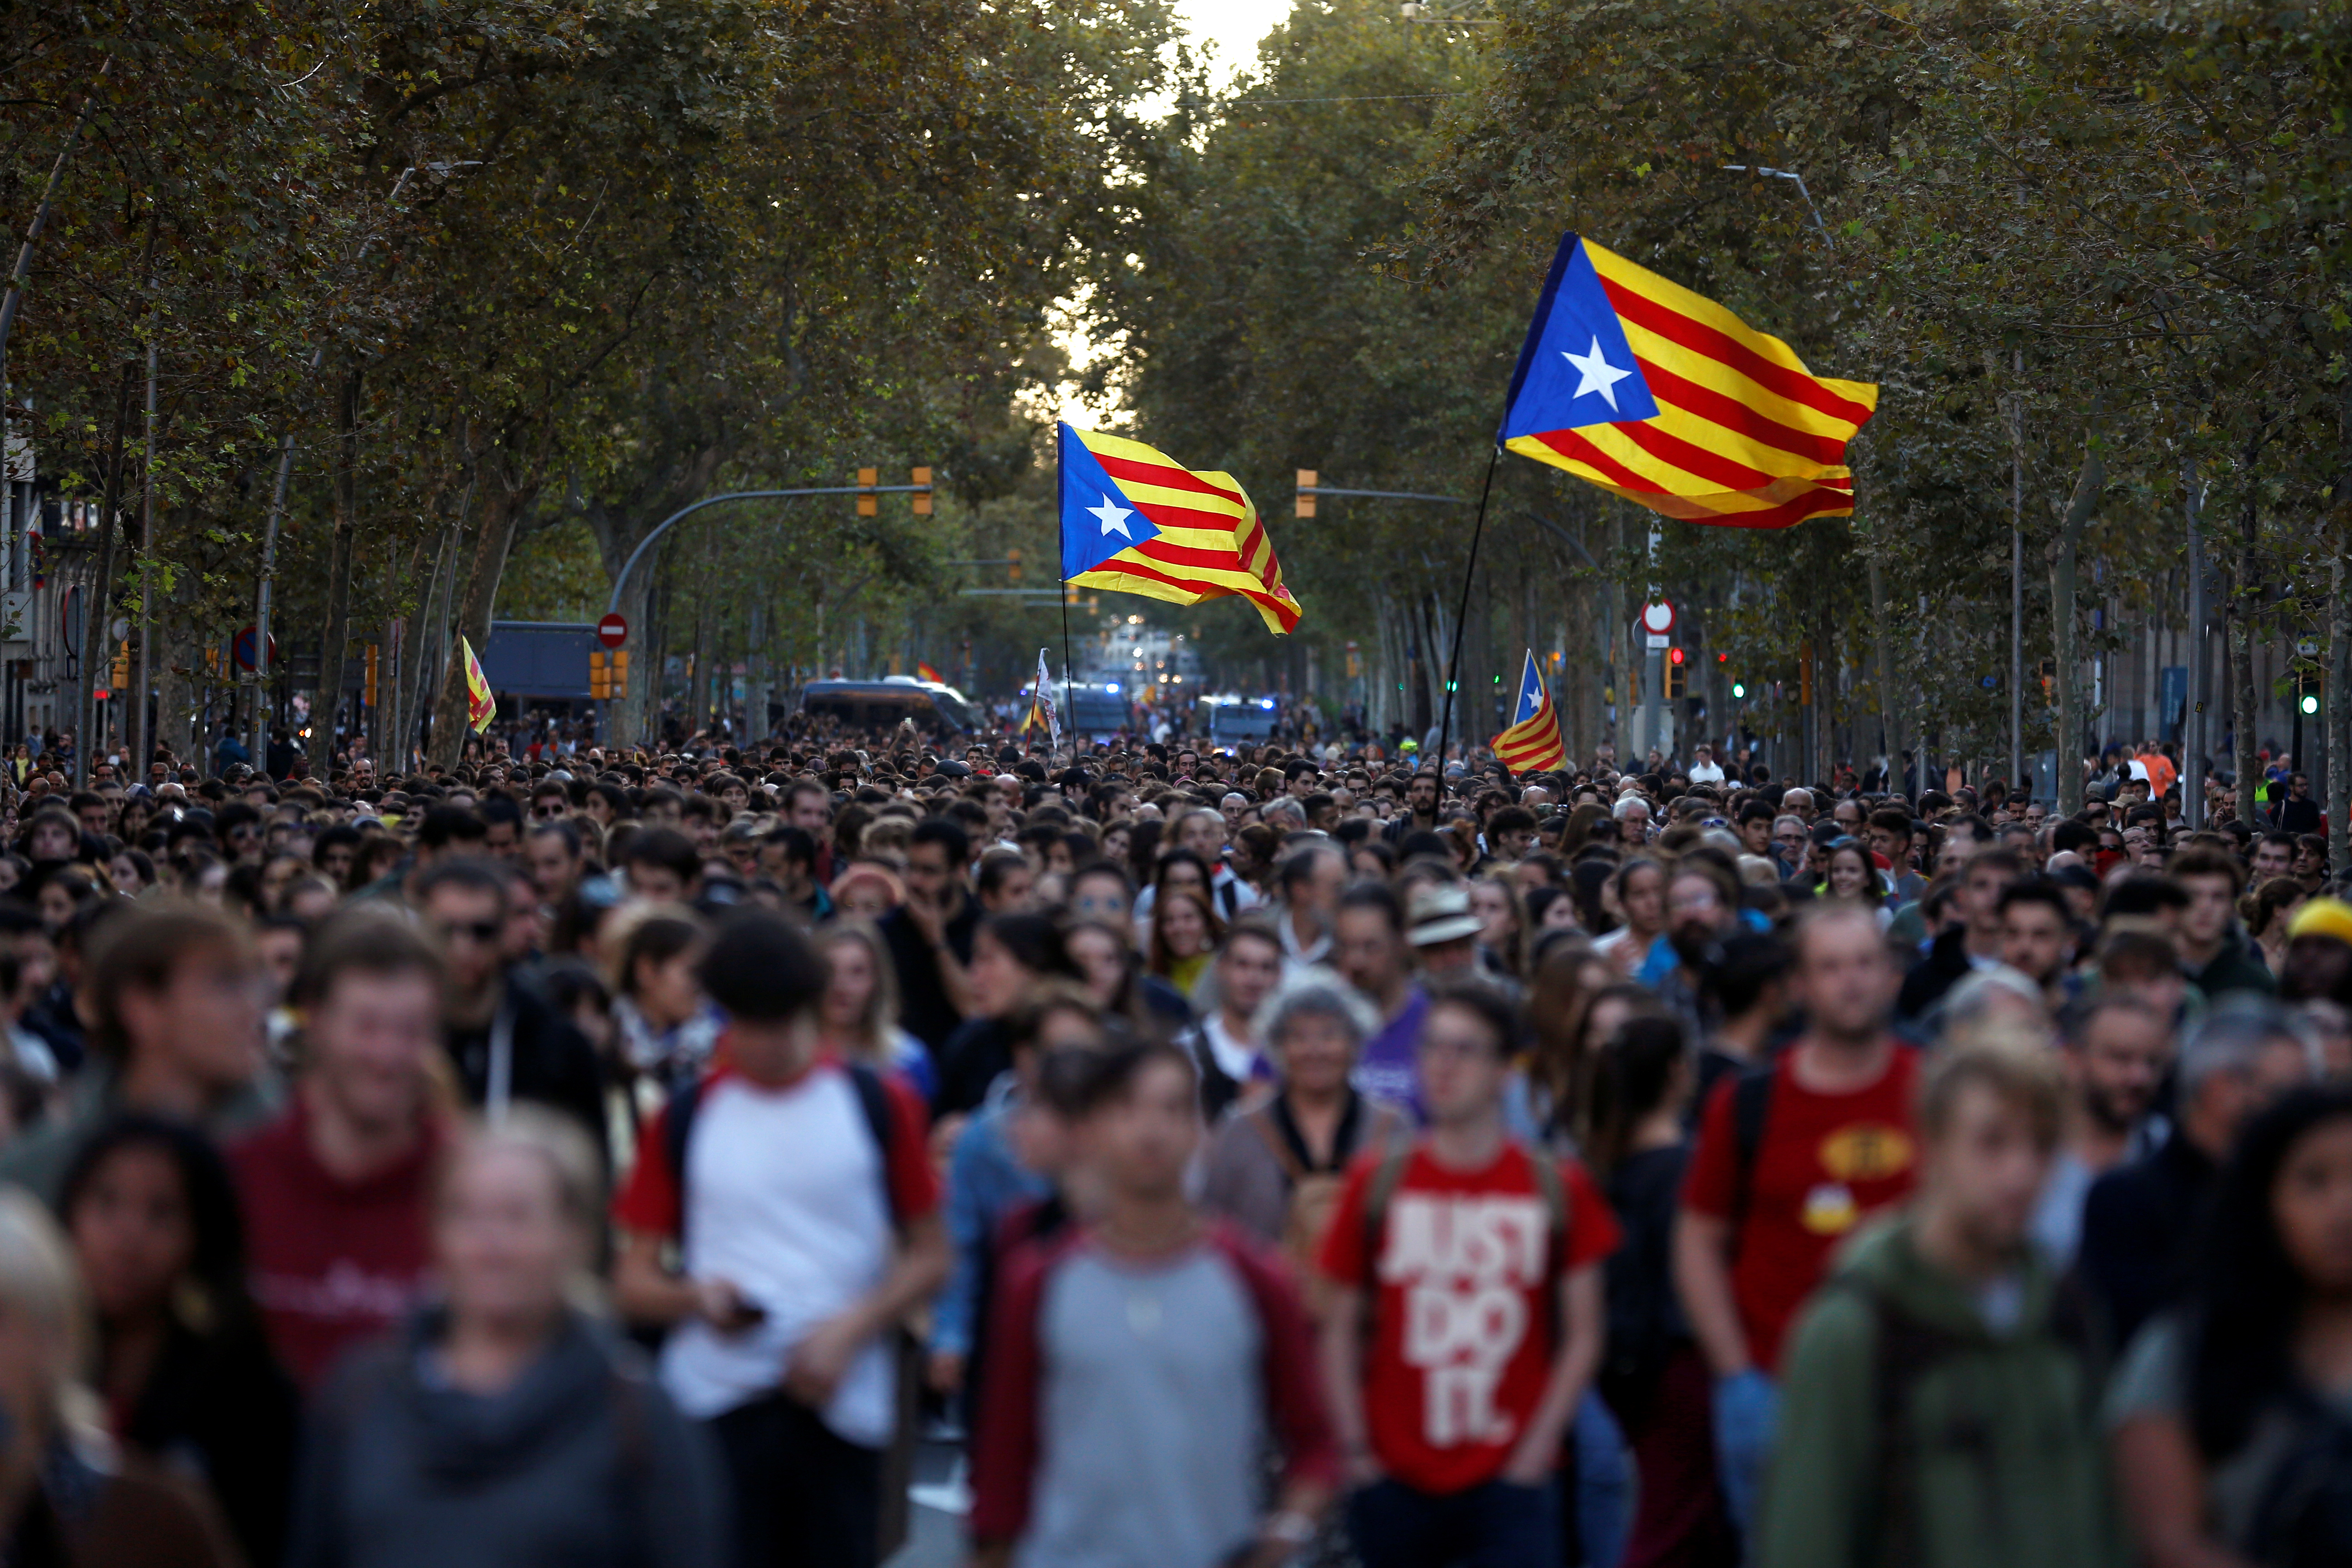 La tensión continúa en Cataluña con más protestas en las calles (FOTOS)